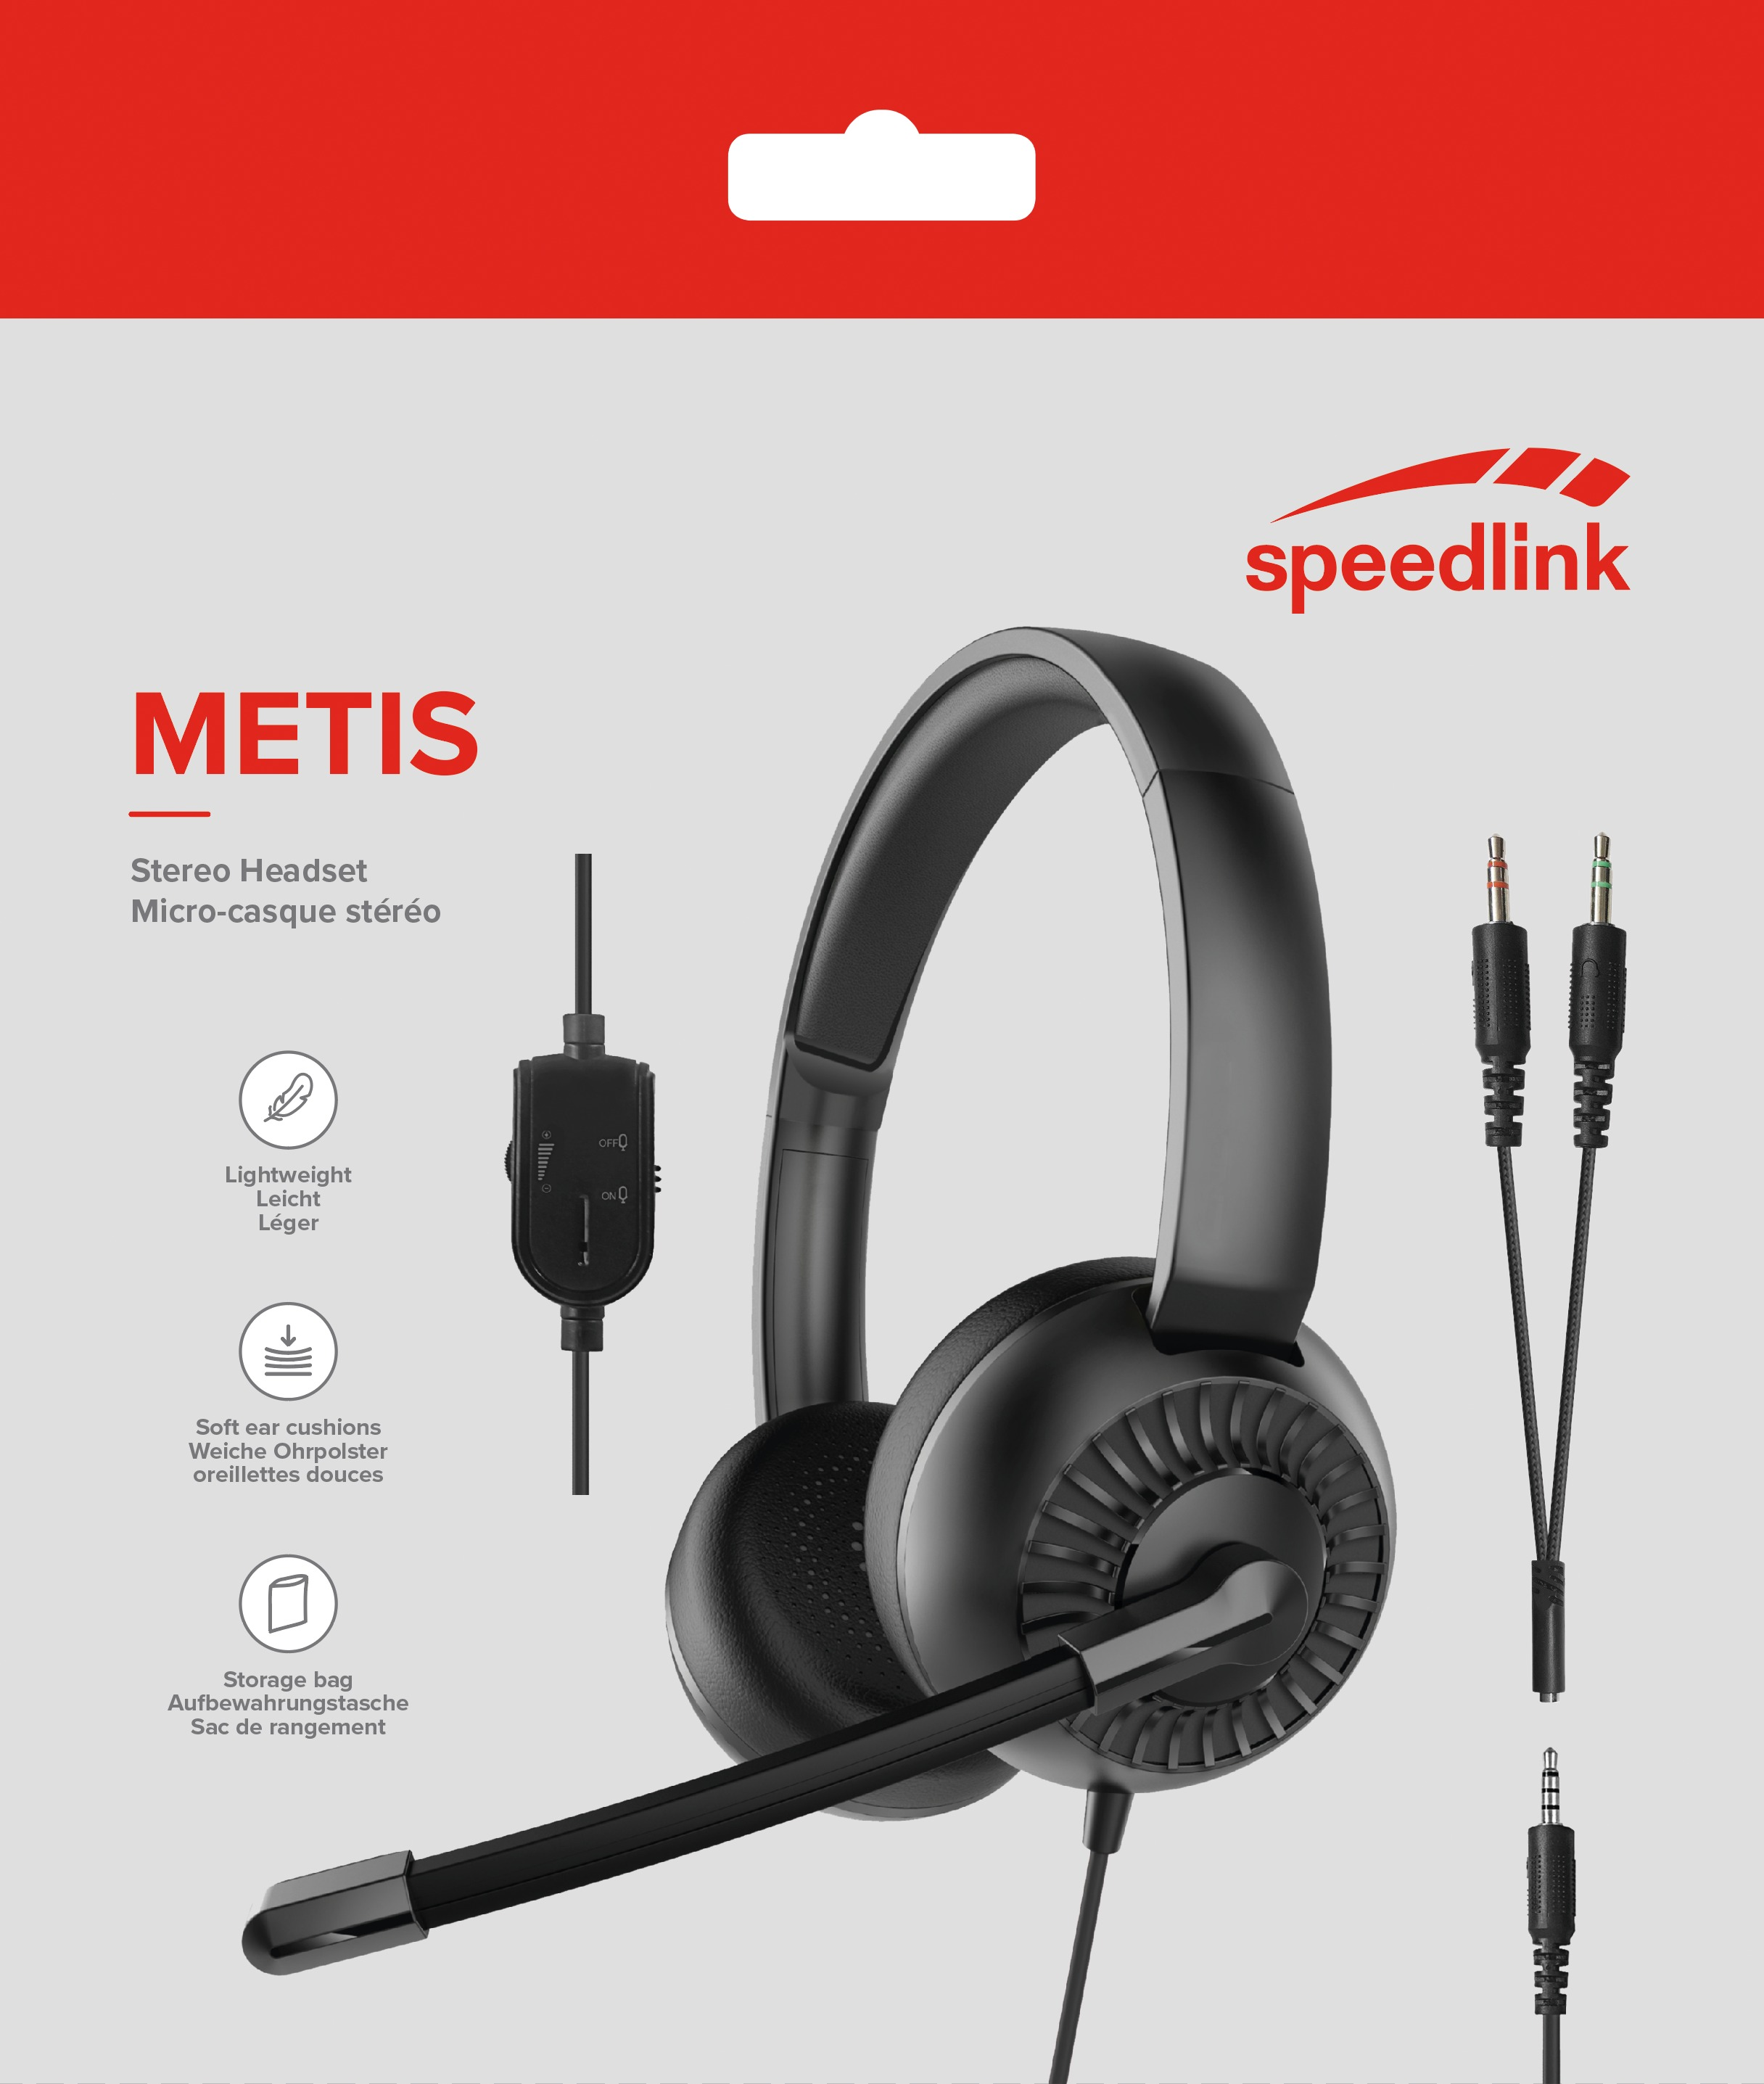 Stereo, On-ear Schwarz METIS Headset SPEEDLINK